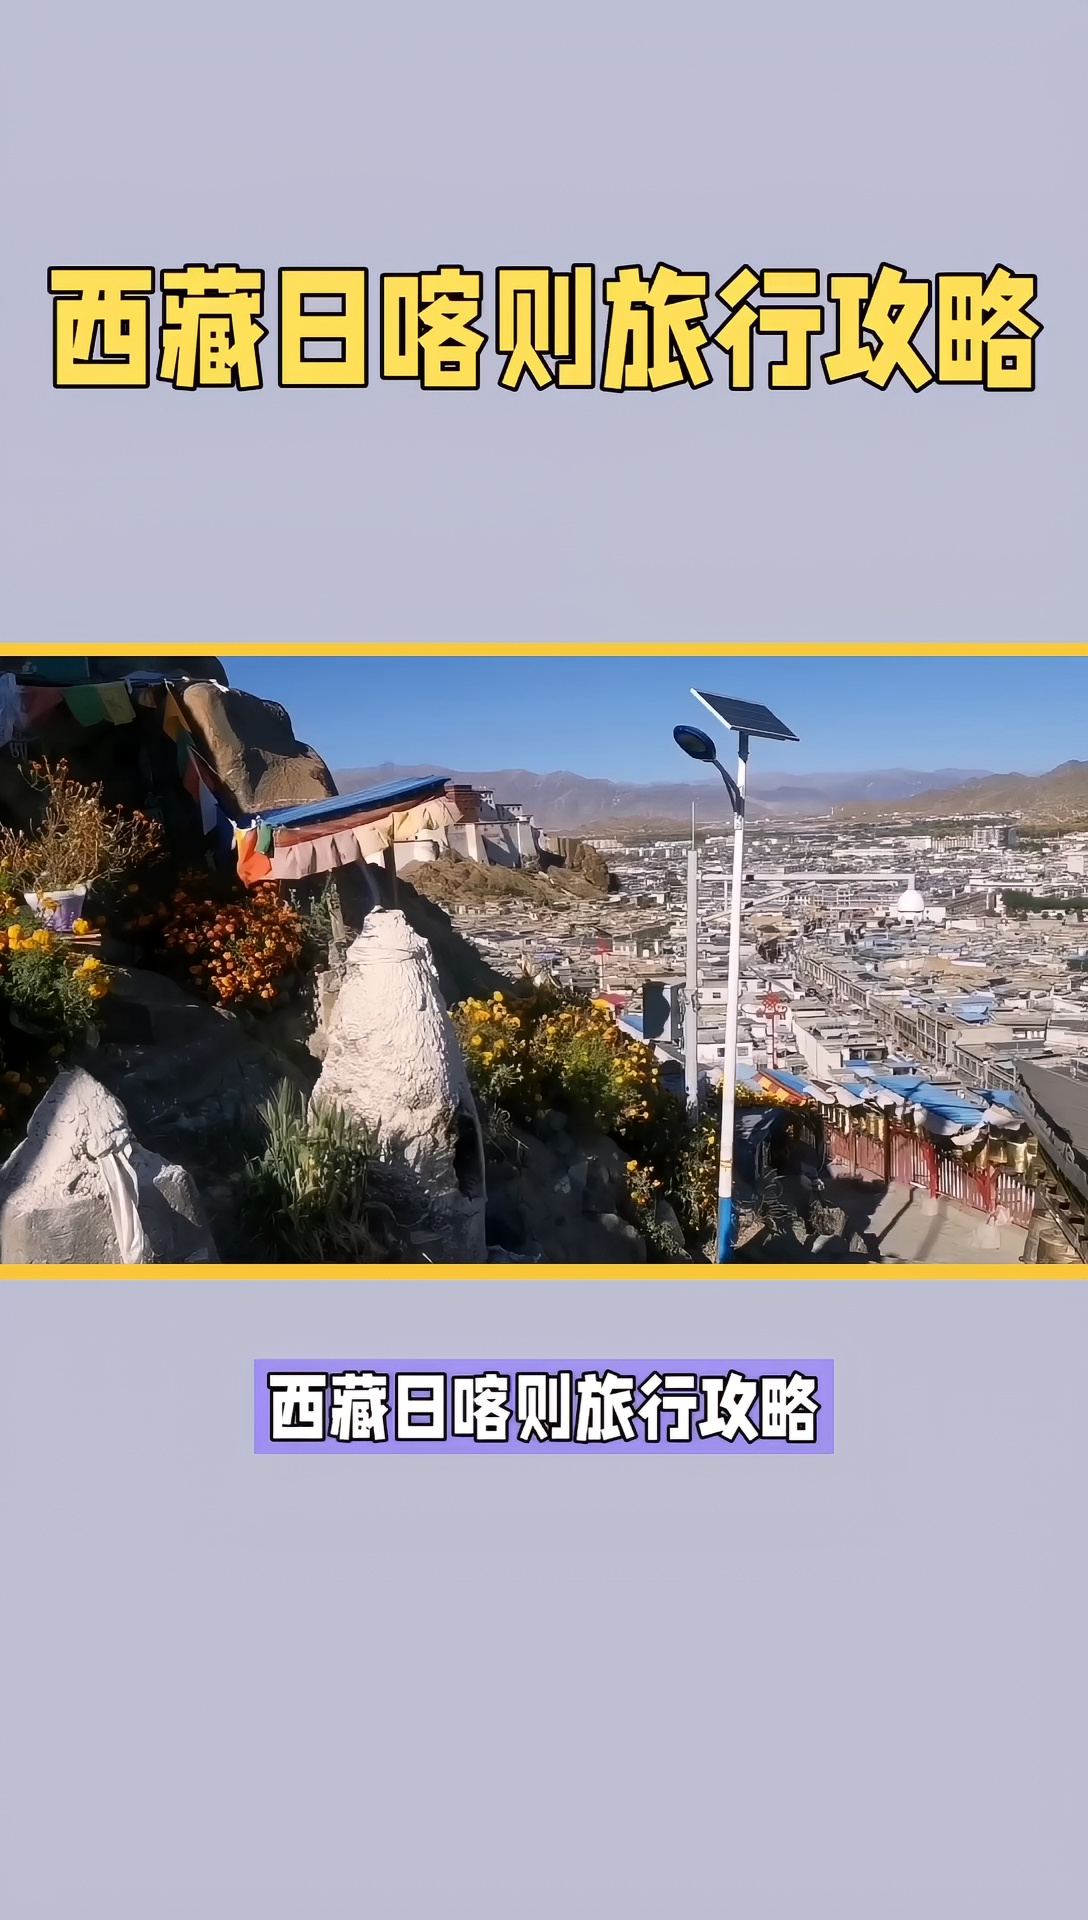 西藏旅行 西藏日喀则才巴拉宫旅行攻略